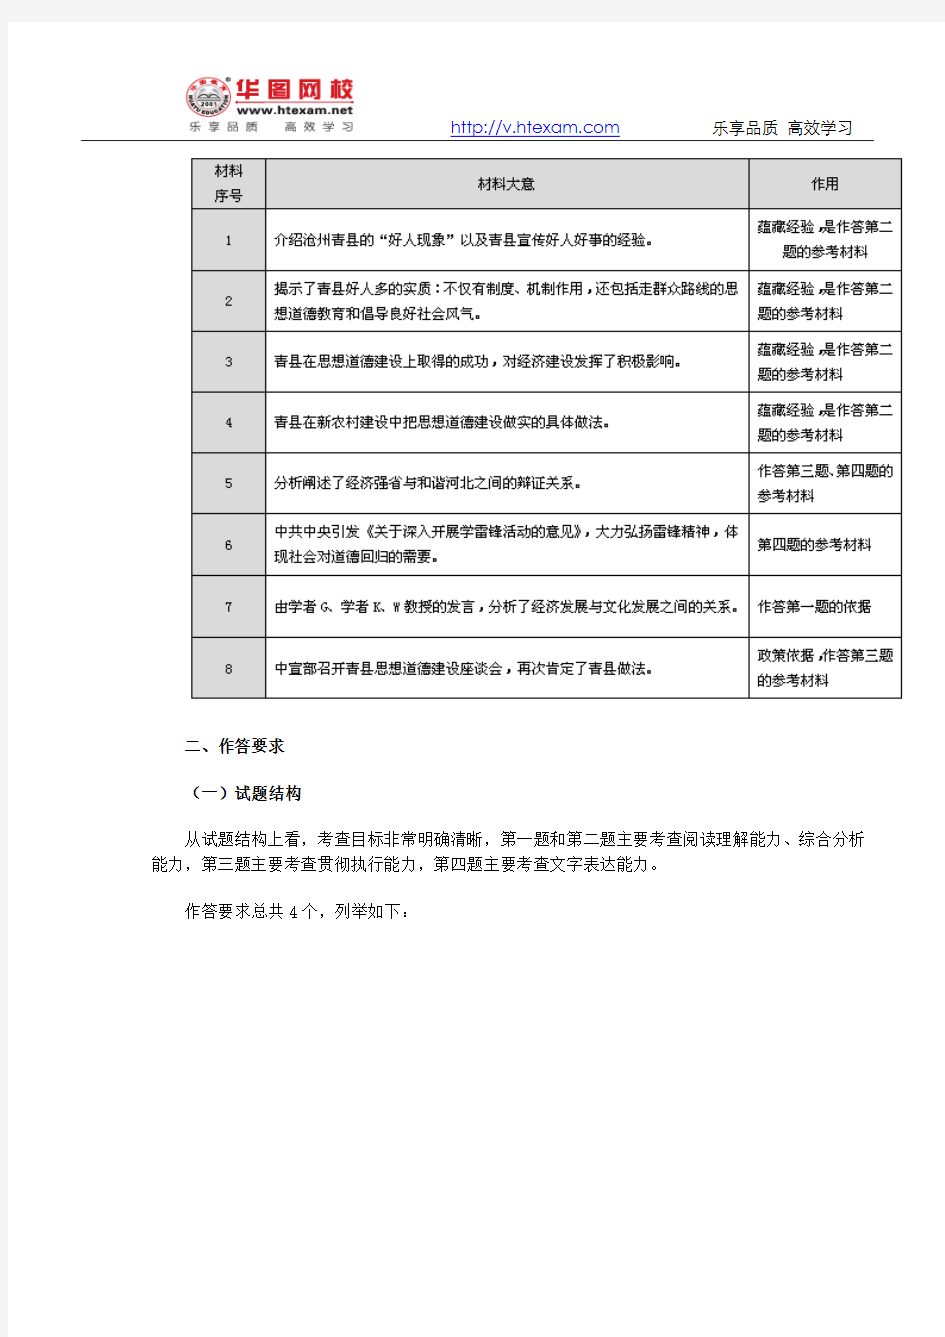 2013年河北省公务员考试职位表